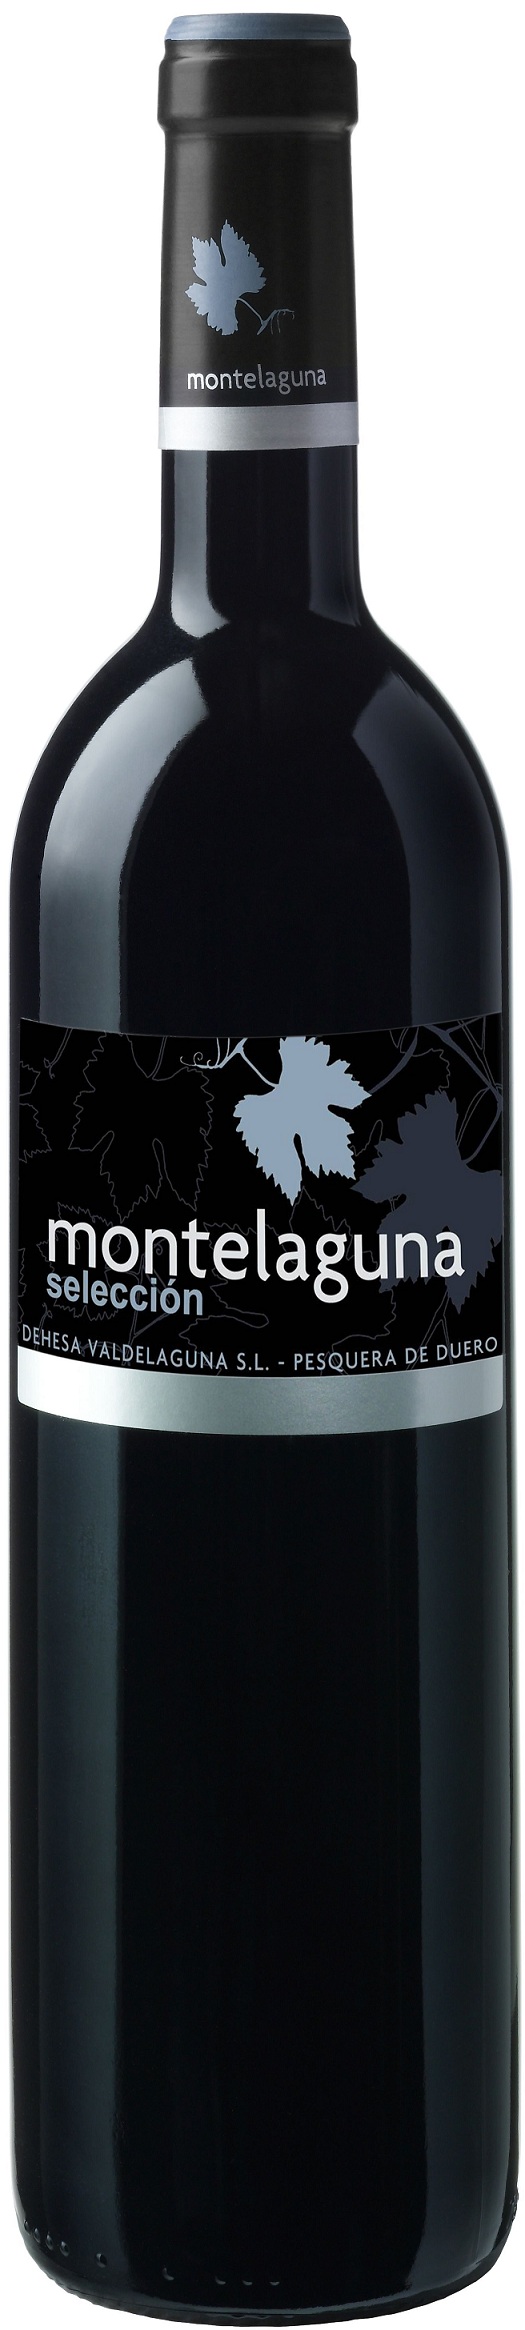 Imagen de la botella de Vino Montelaguna Selección